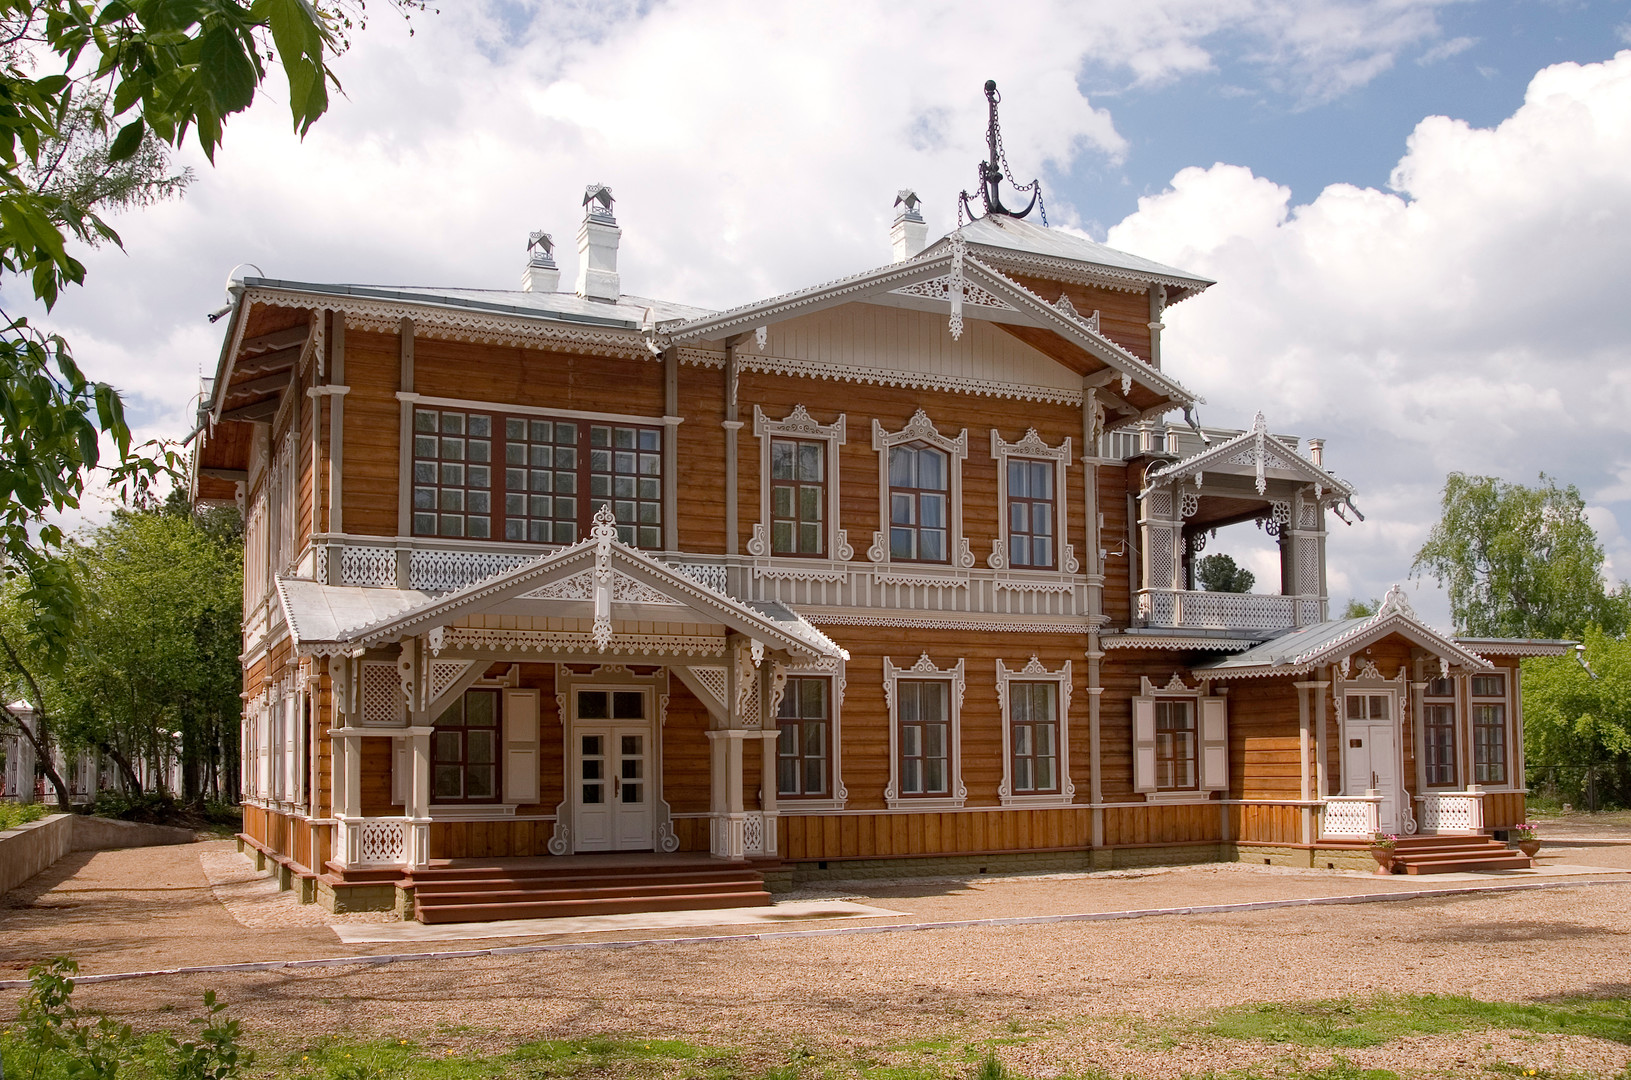 Anwesen von W. P. Sukatschew, Bau Ende des 19. Jahrhunderts, heute eine Gemäldegalerie